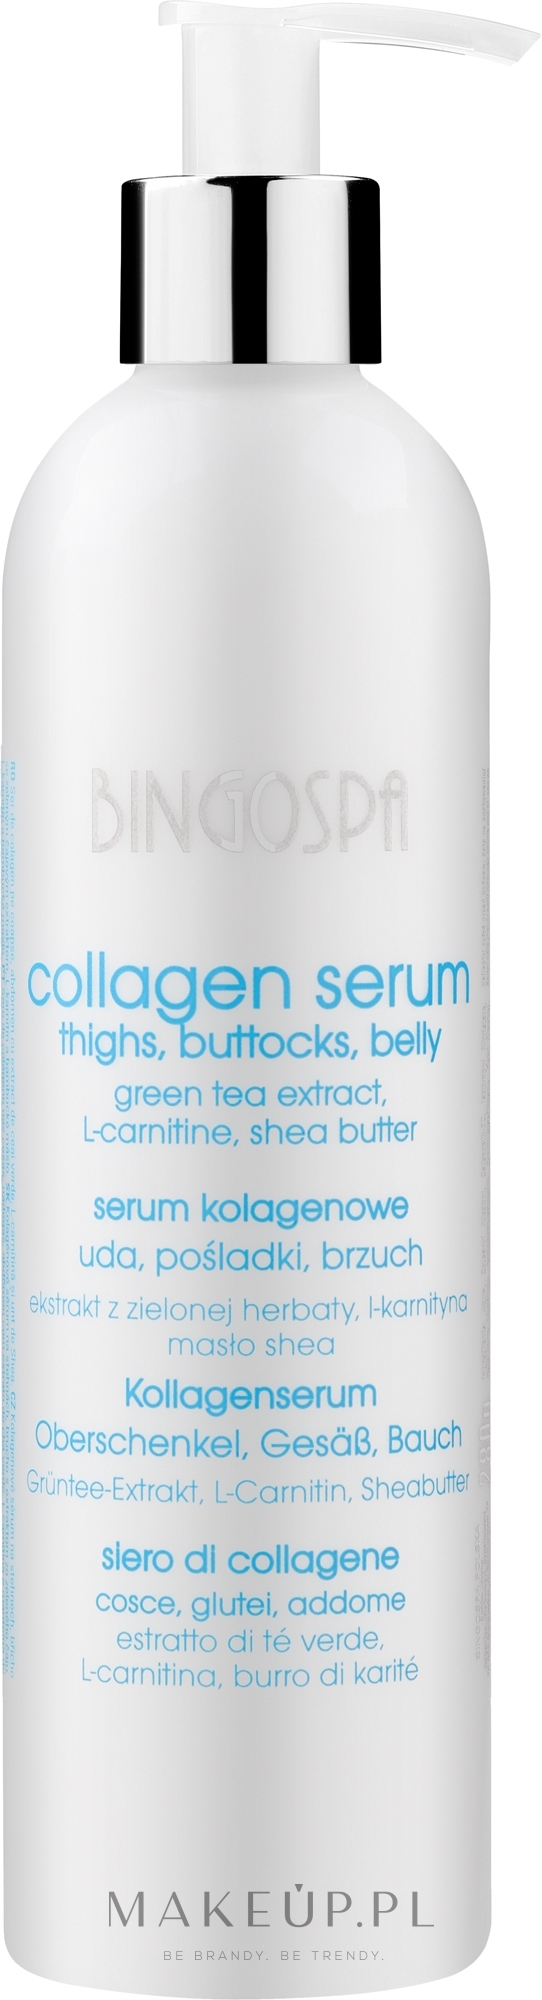 Serum kolagenowe na uda, pośladki i brzuch - BingoSpa Serum Collagen  — Zdjęcie 280 g